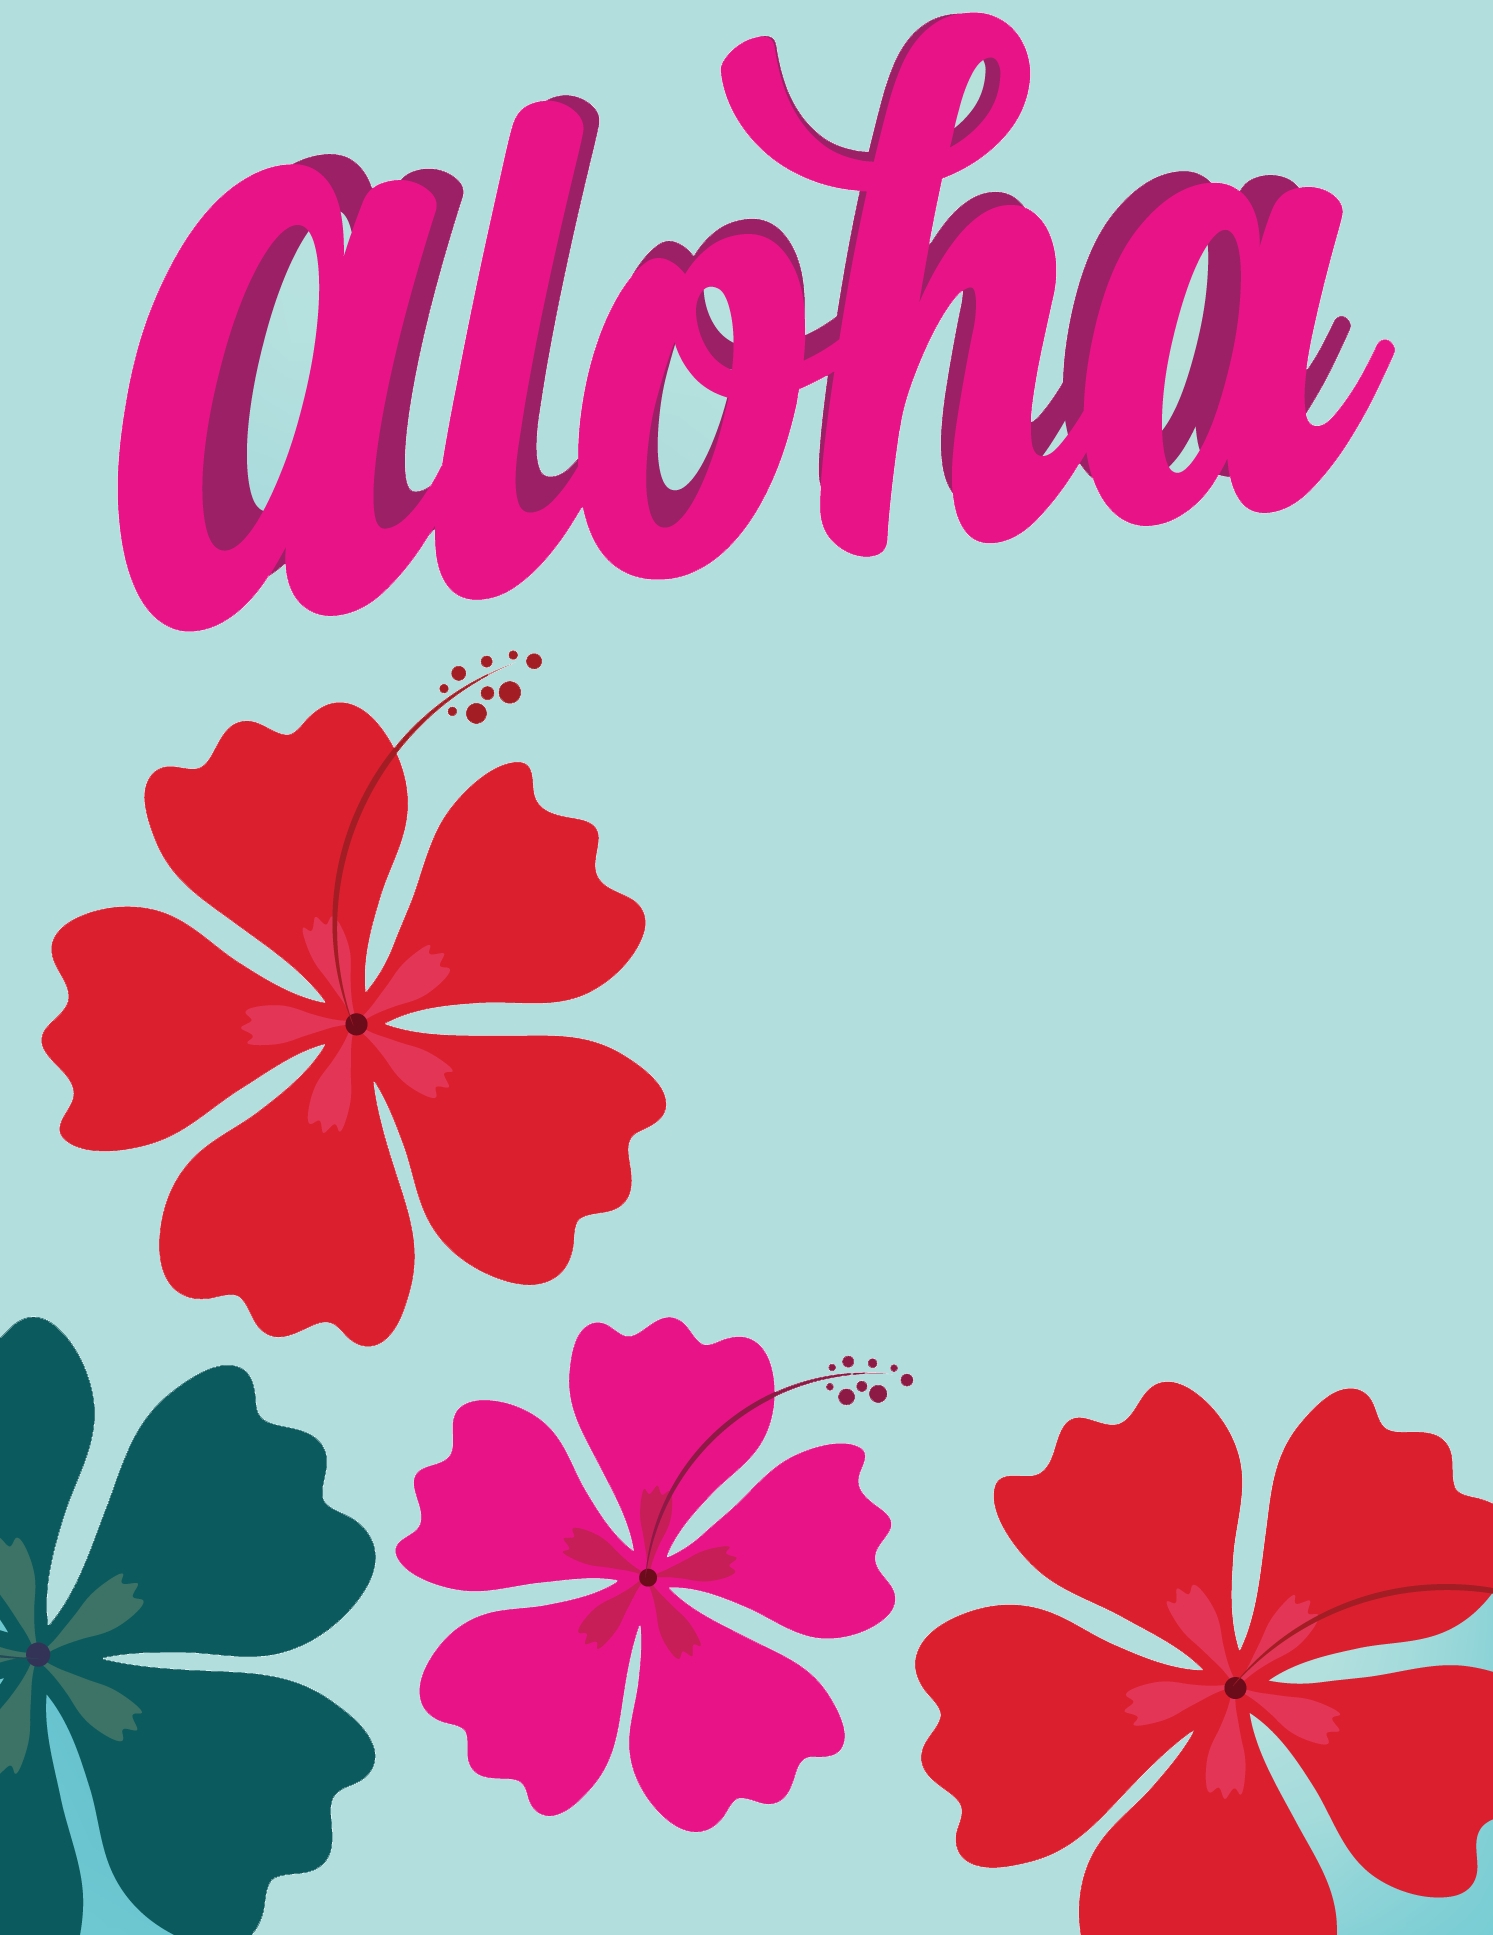 Aloha from PS198